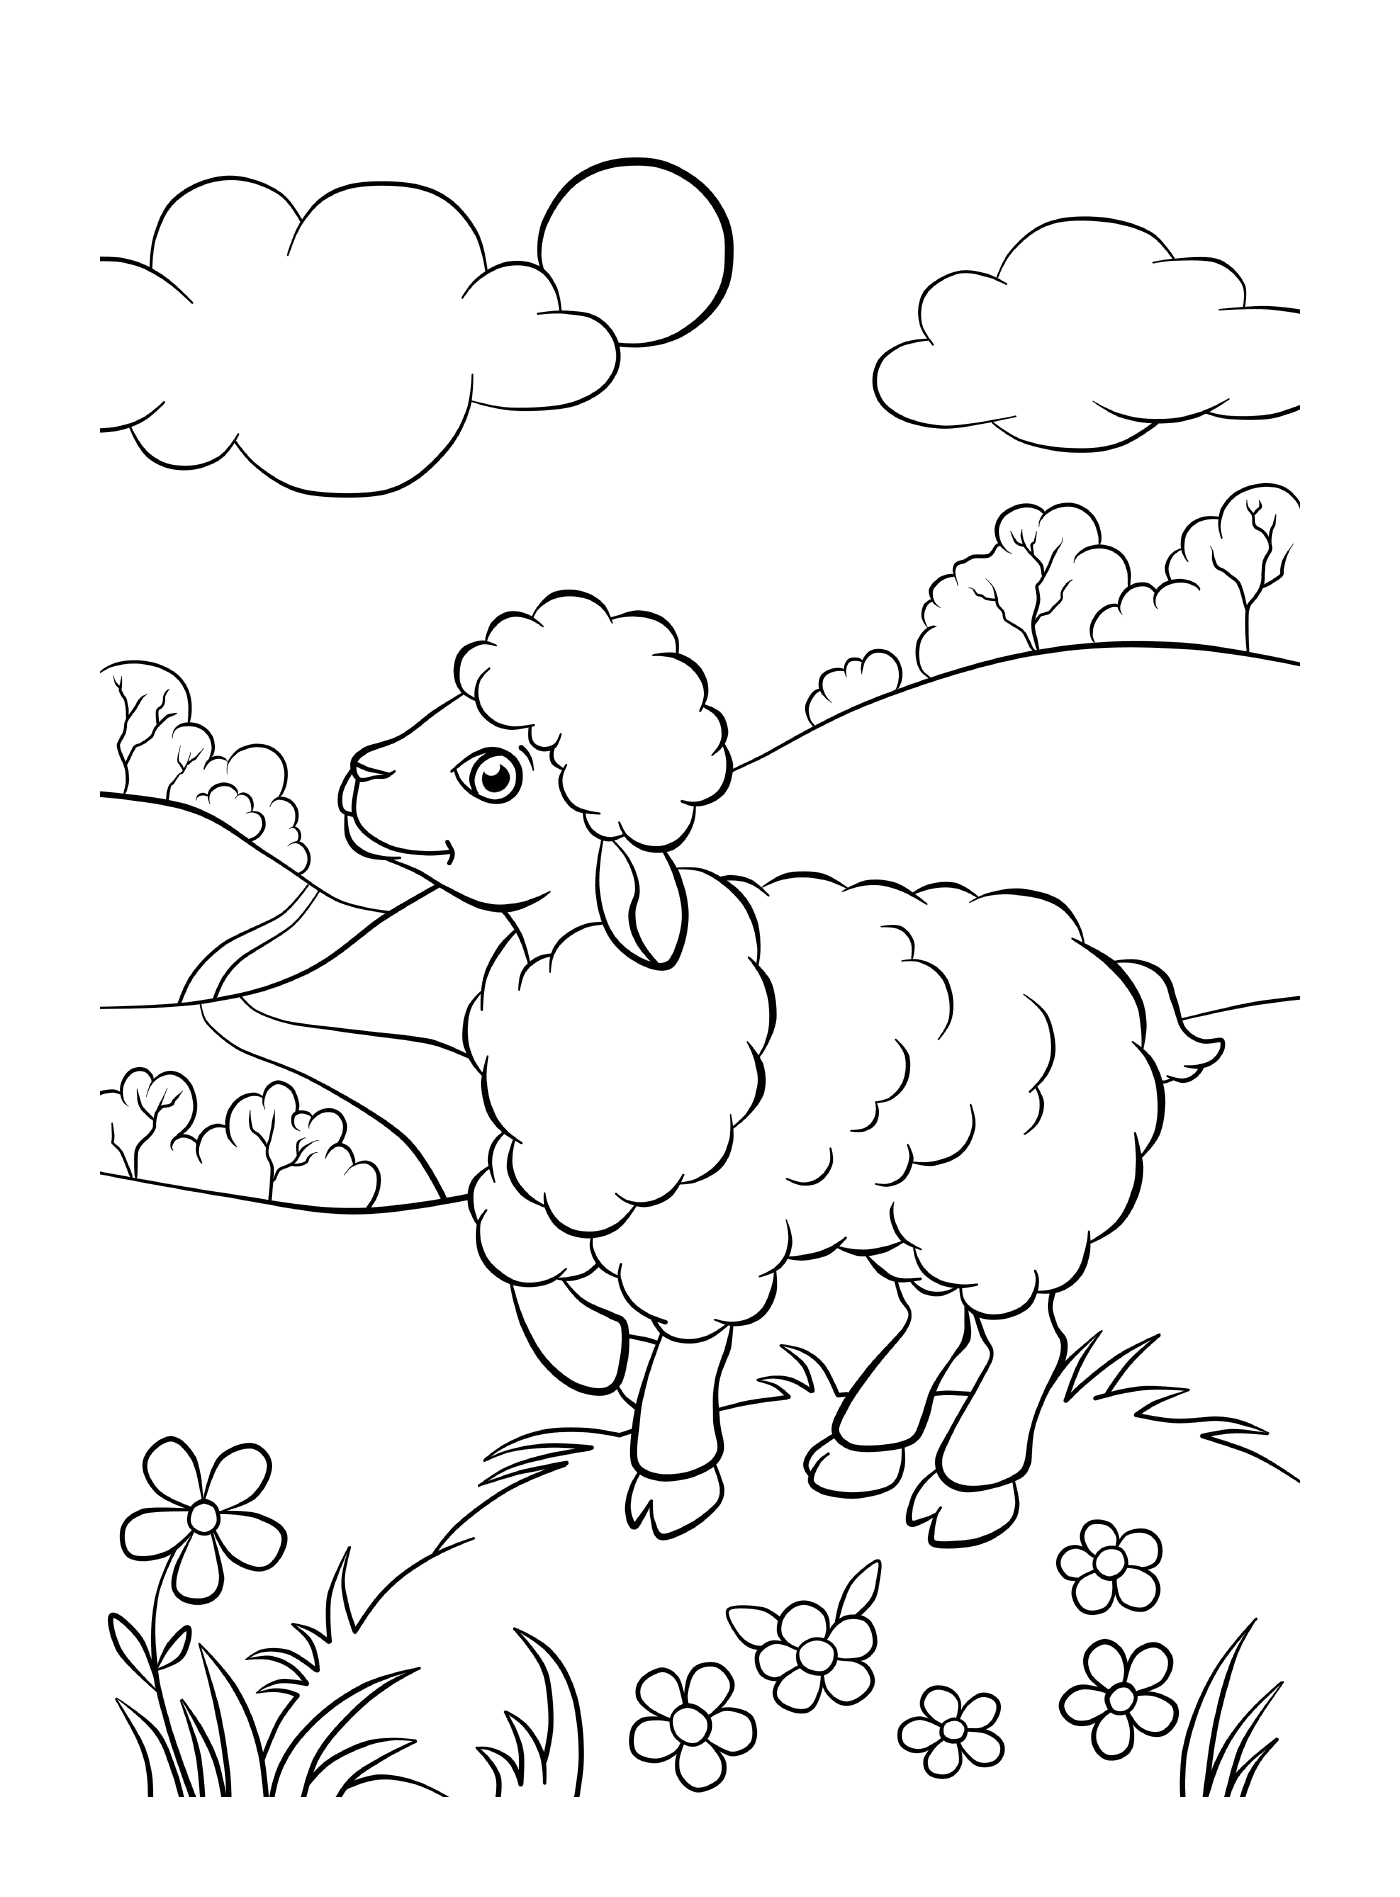  Sheep in green fields 